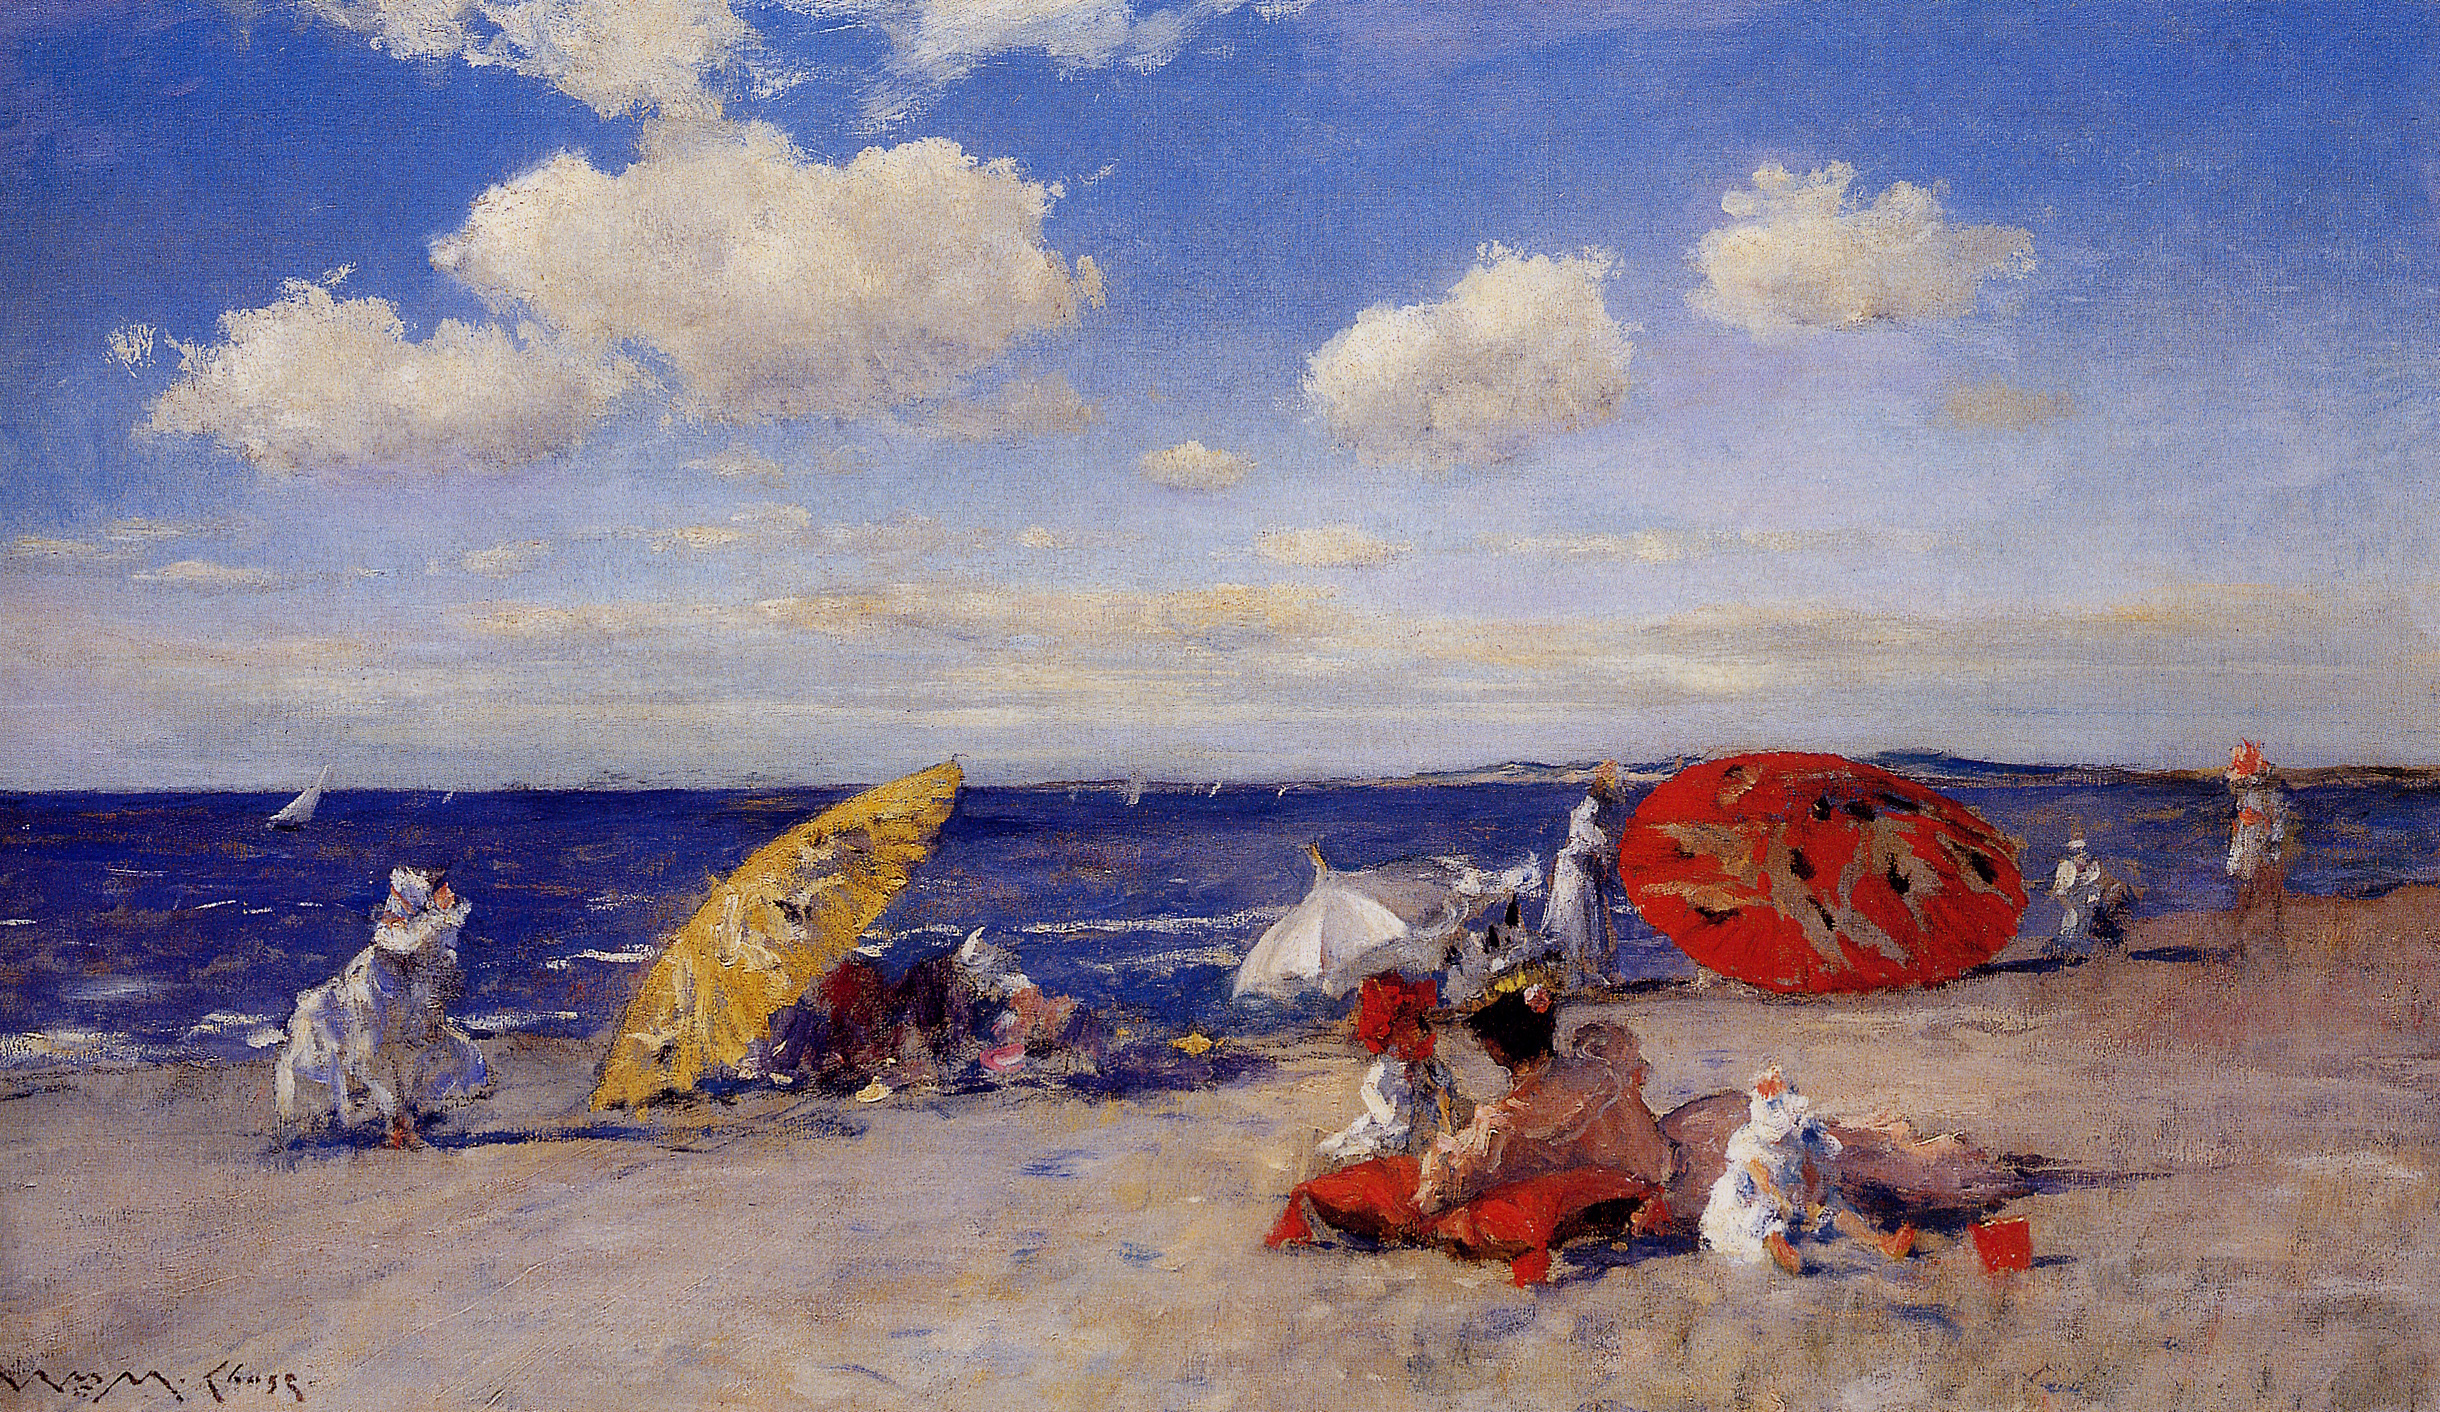 A orillas del mar by William Merritt Chase - 1892 - 50.8 x 86.4 cm Museo Metropolitano de Arte